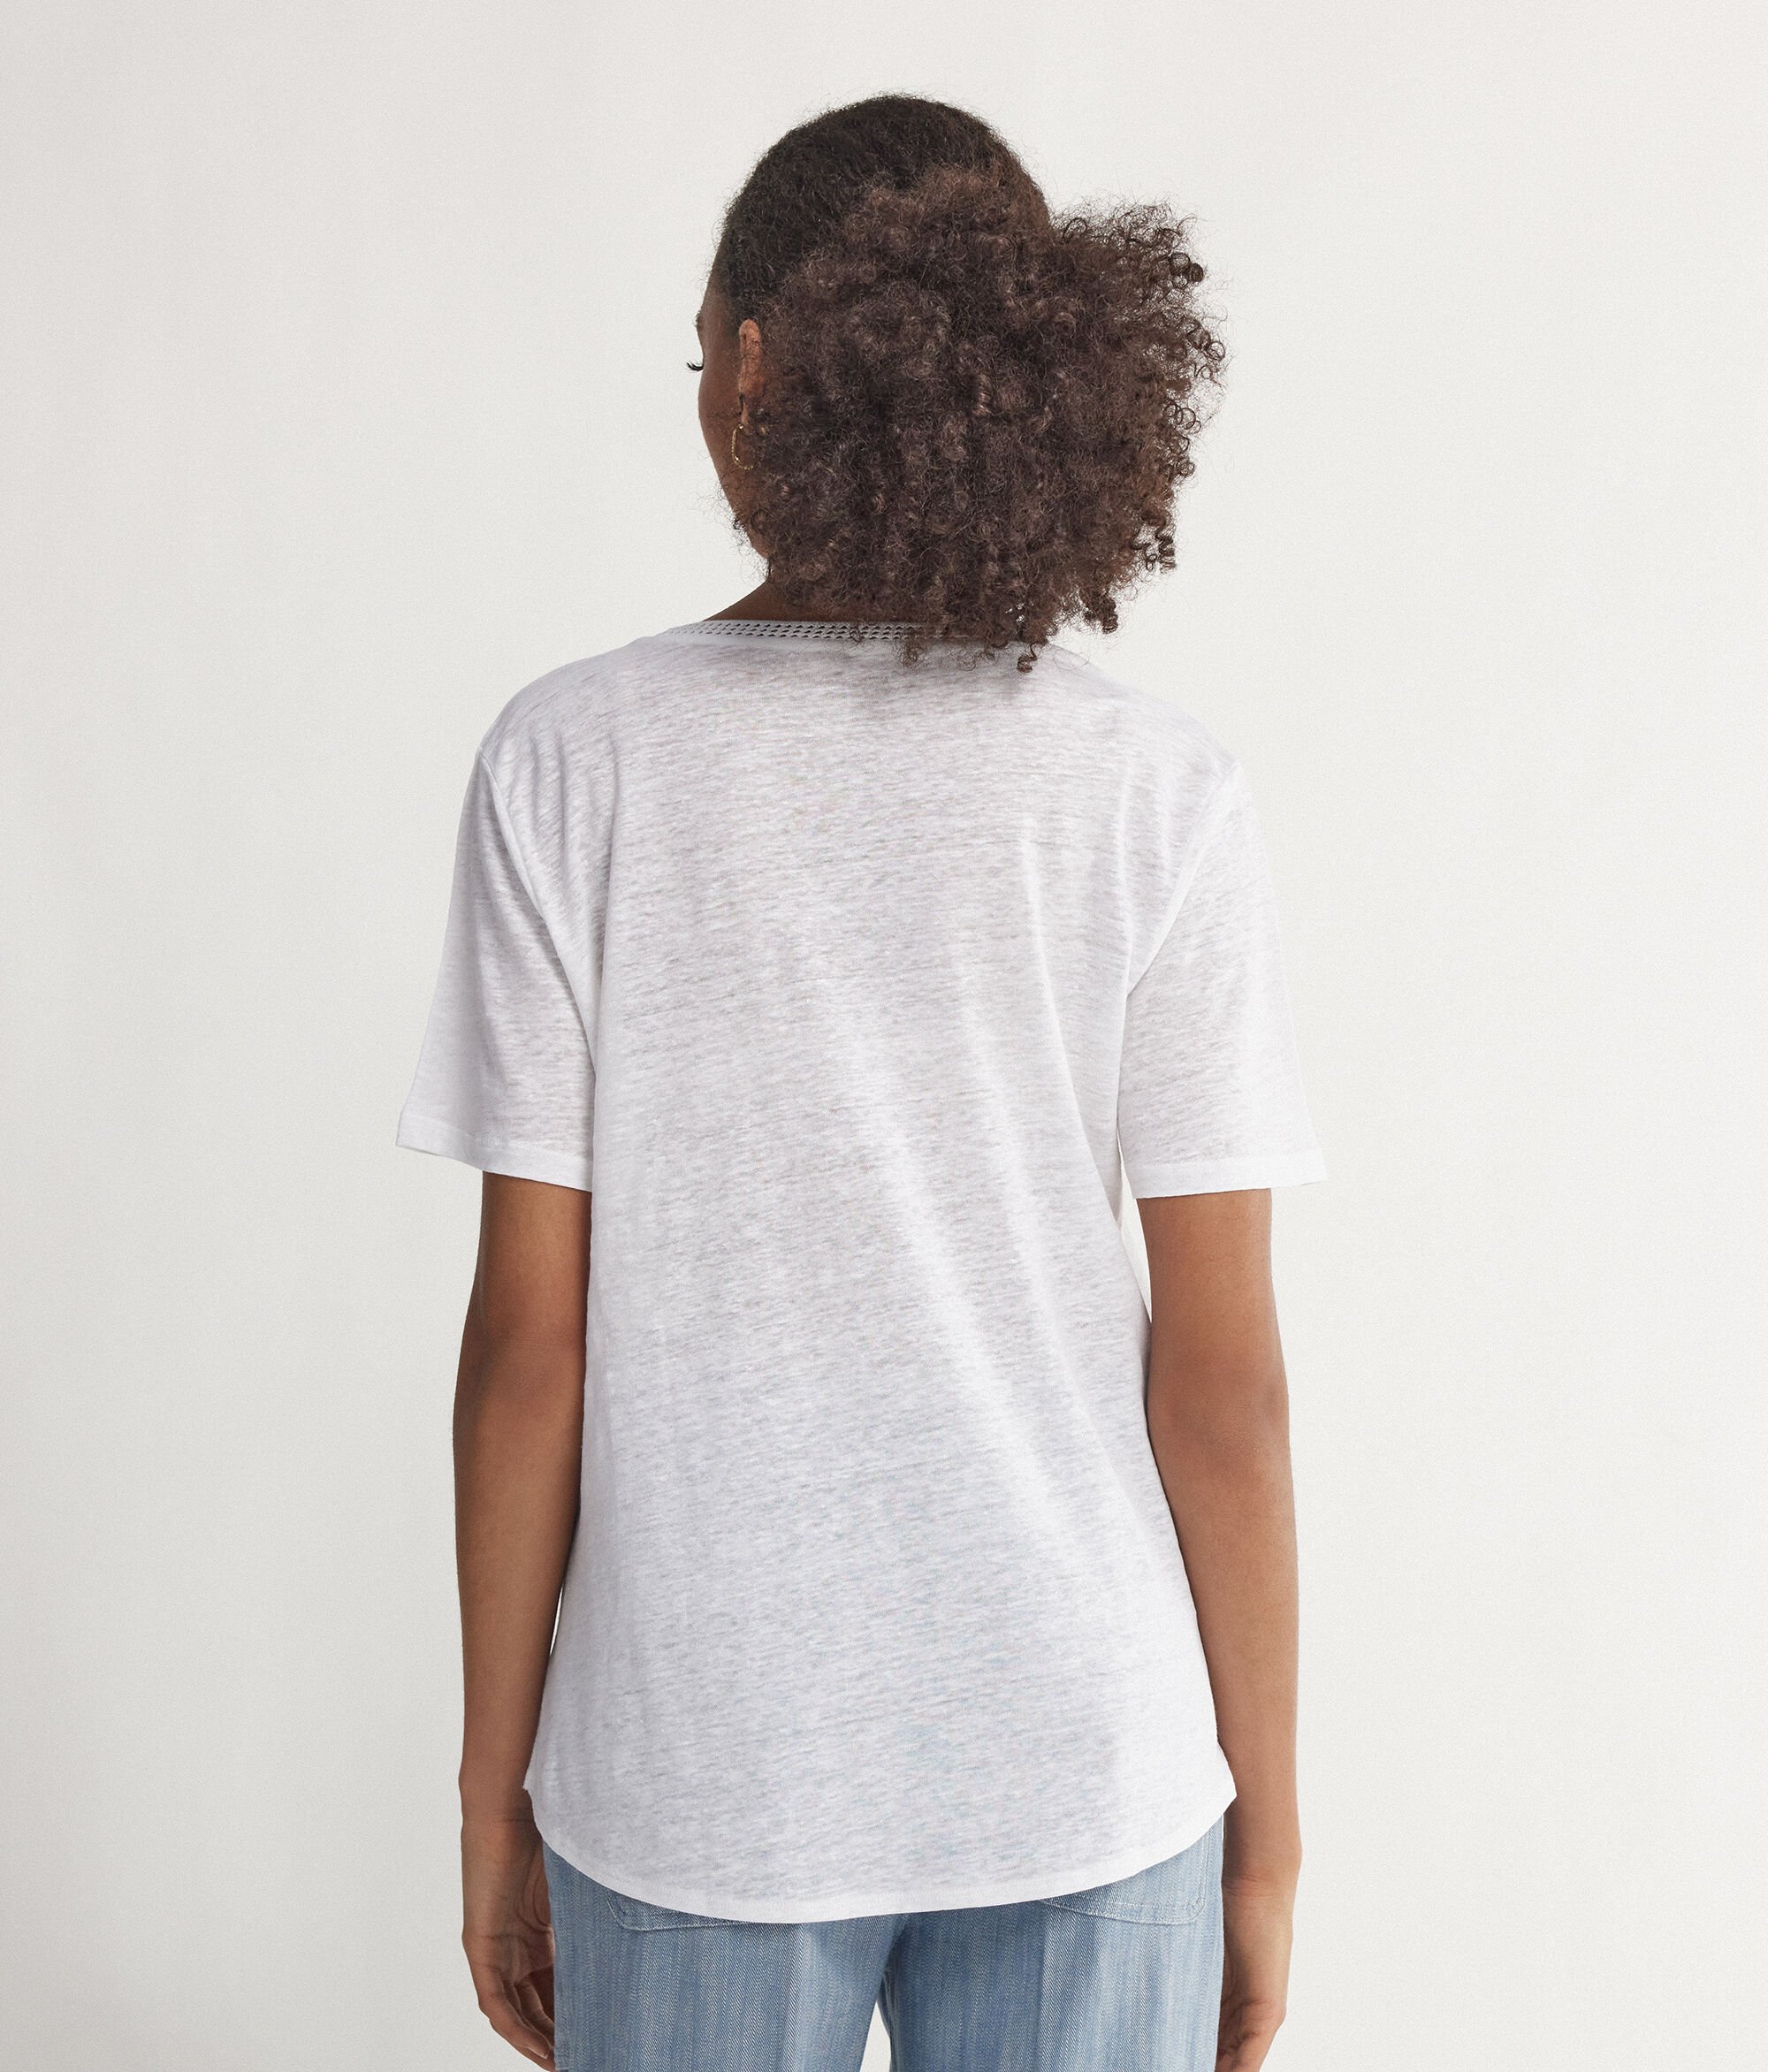 Lniany t-shirt z okrągłym dekoltem i siateczkową lamówką